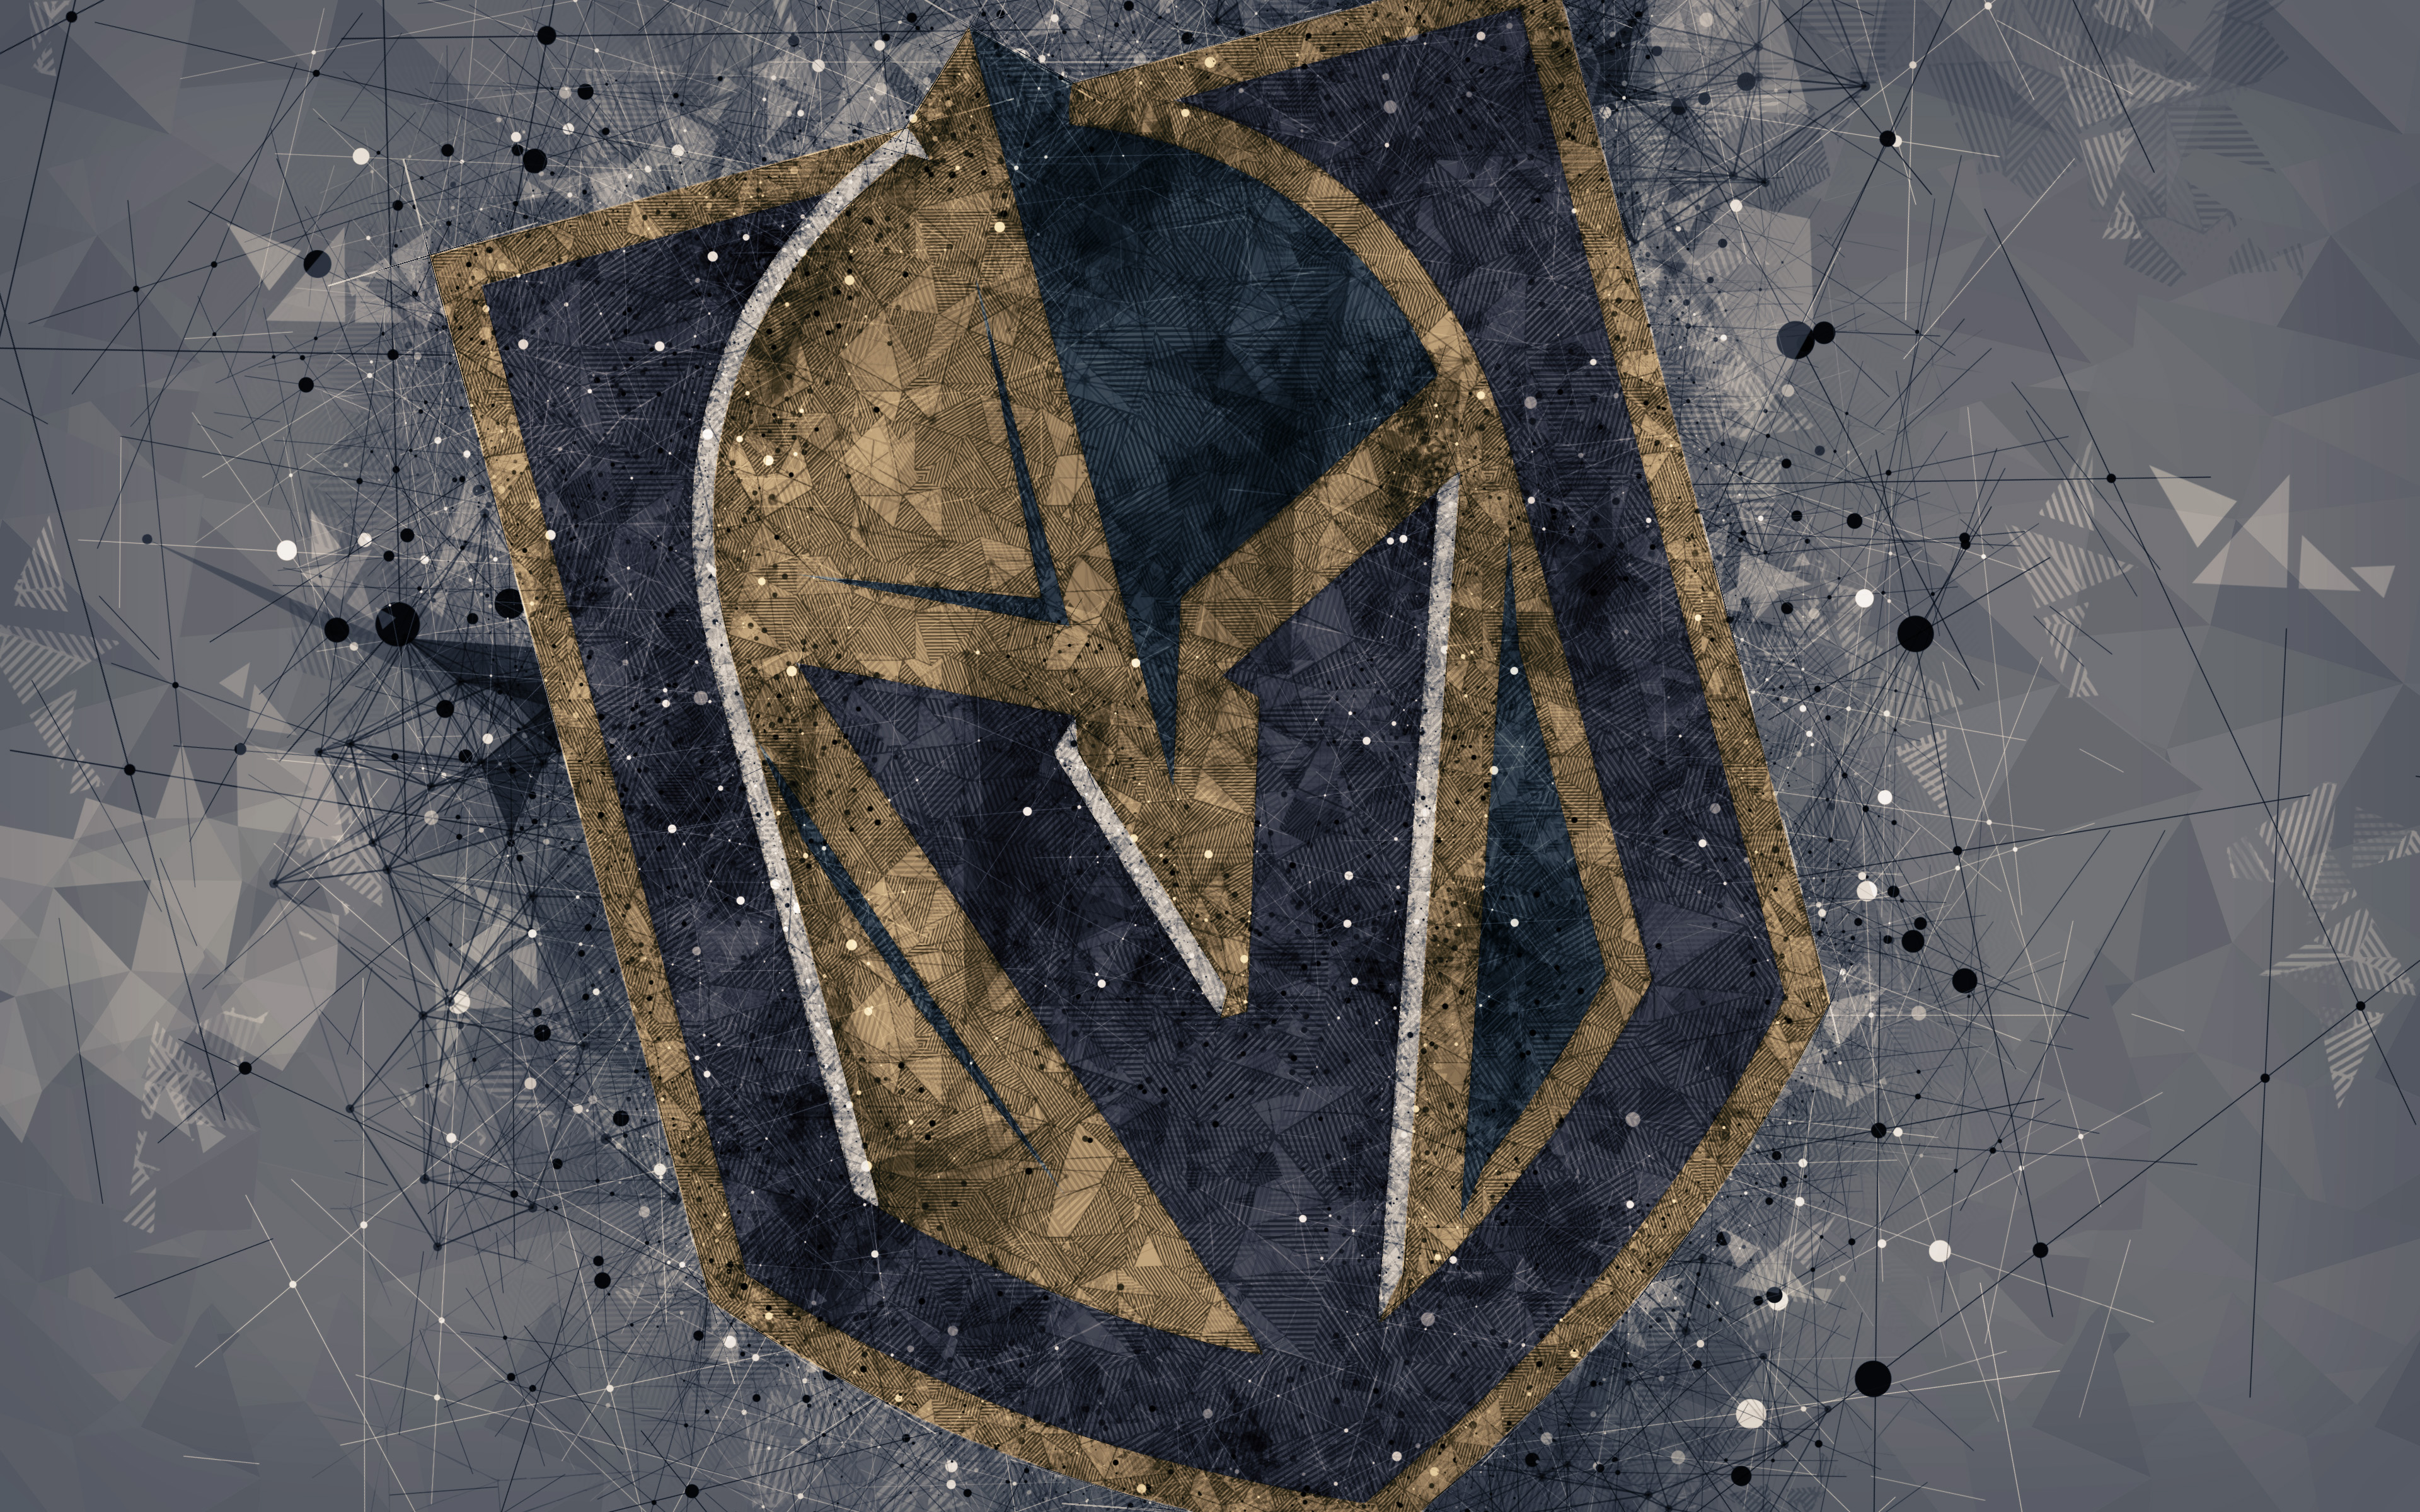 vegas golden knights, sports, emblem, logo, nhl, hockey